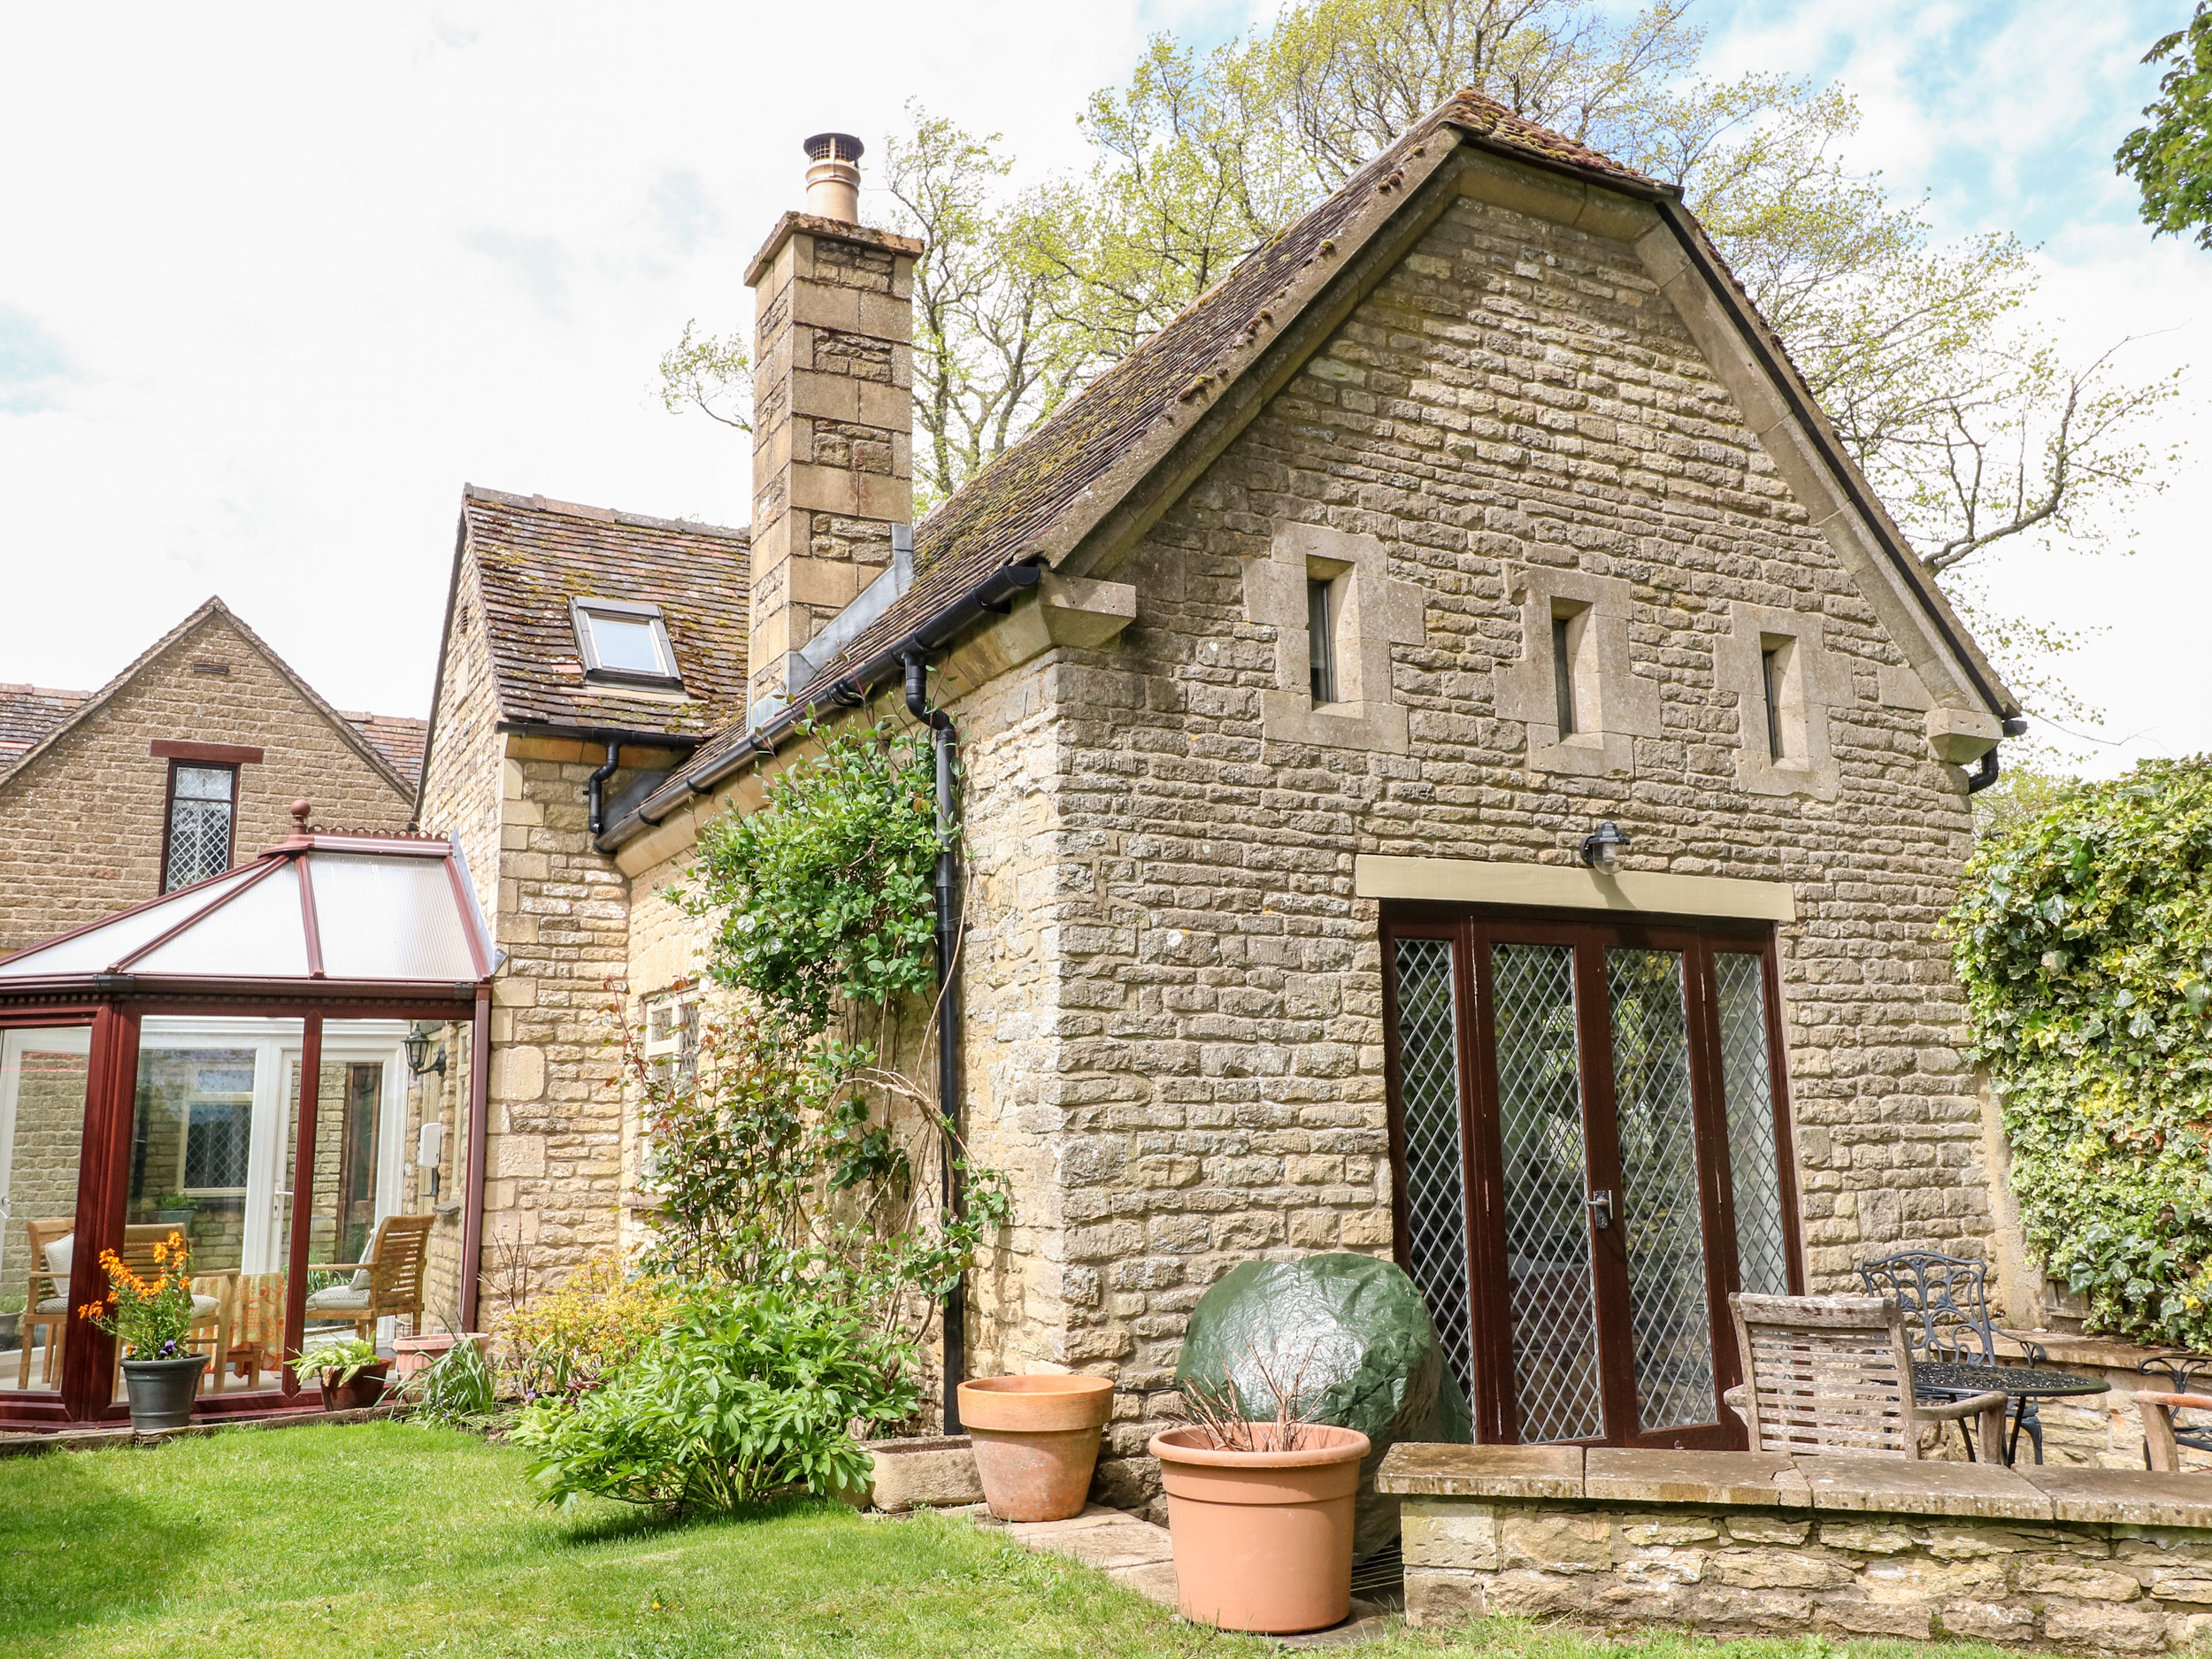 Anvil Cottage, Oxfordshire